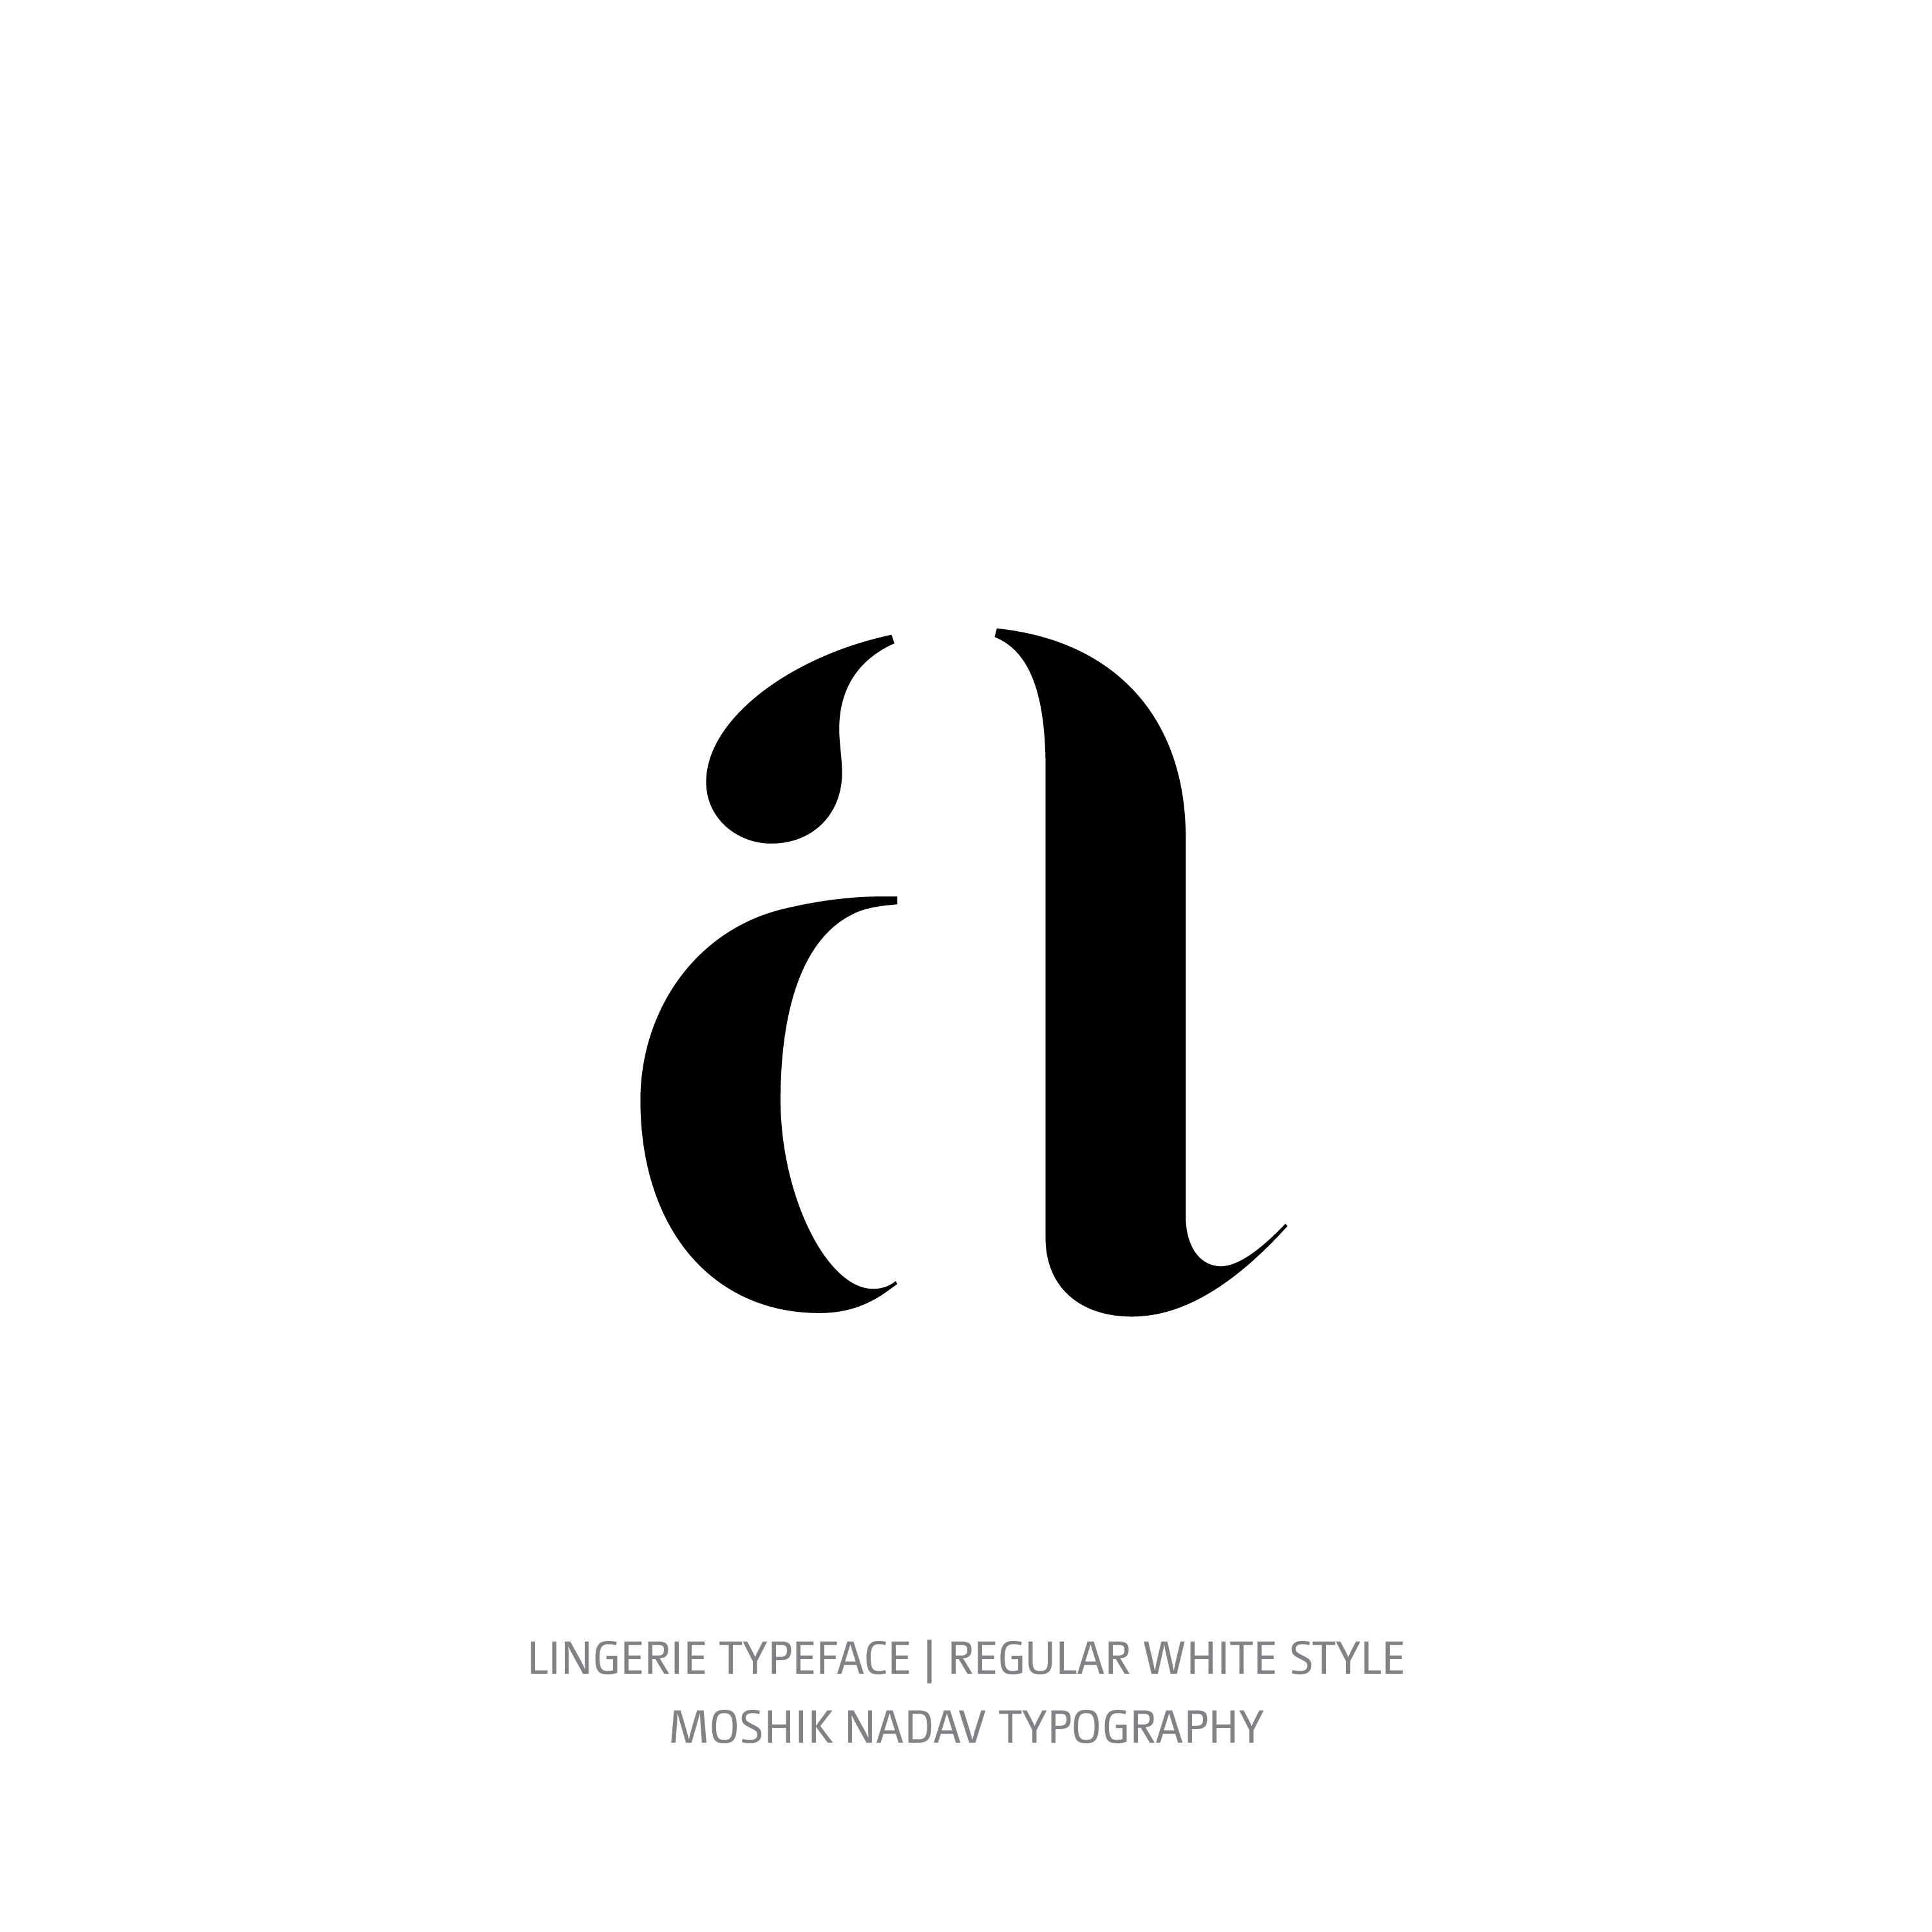 Lingerie Typeface Regular White a